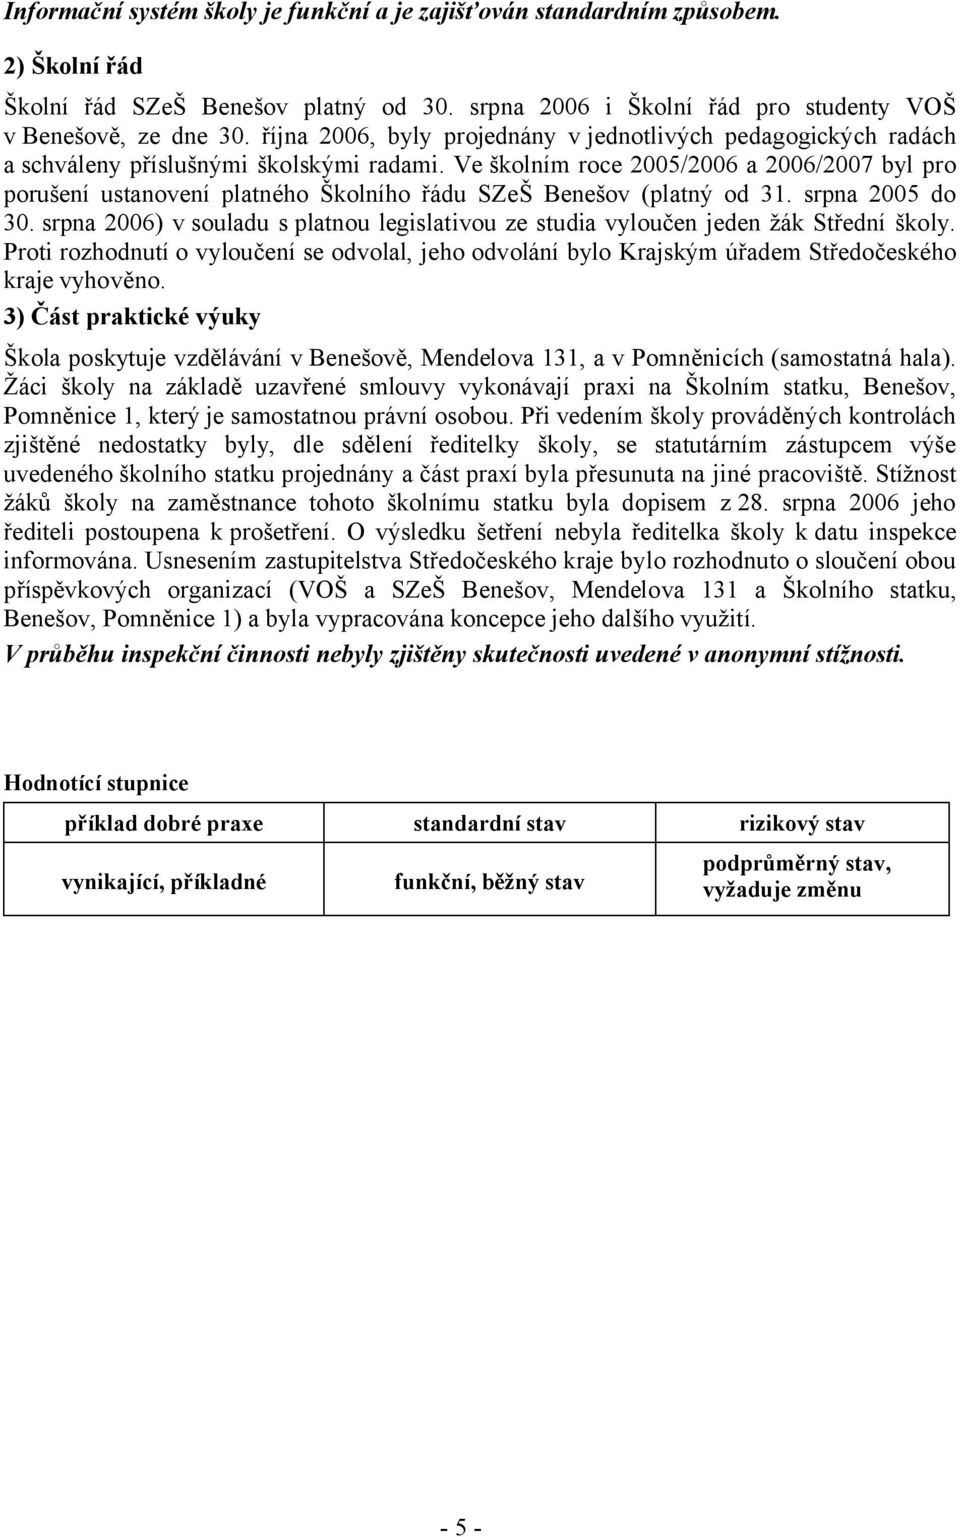 Ve školním roce 2005/2006 a 2006/2007 byl pro porušení ustanovení platného Školního řádu SZeŠ Benešov (platný od 31. srpna 2005 do 30.